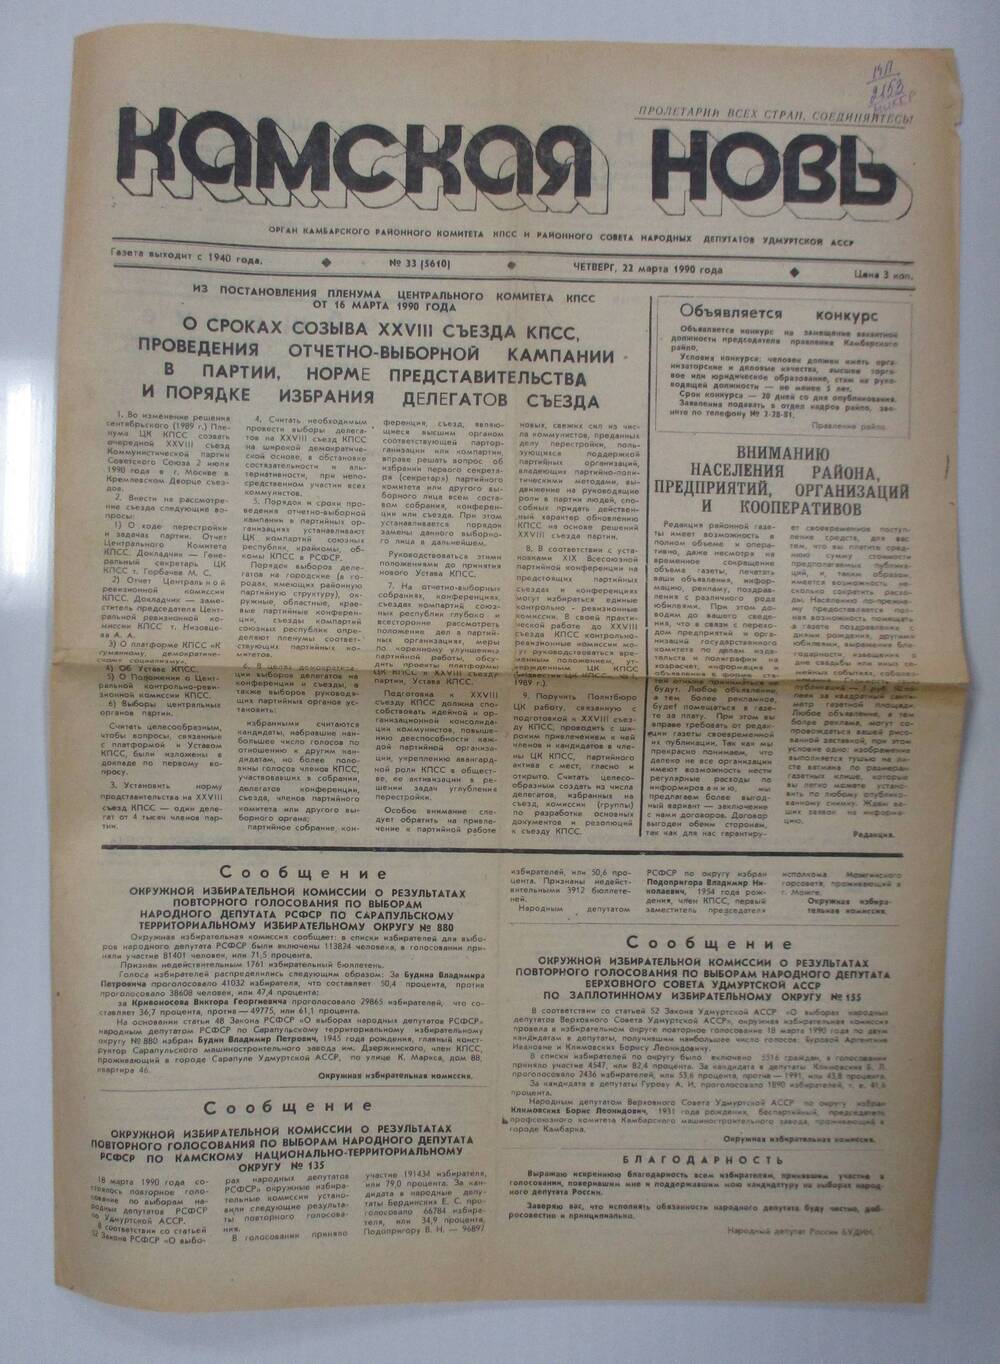 Газета Камская новь №33 от 22 марта 1990 г.
(материалы по выборам)